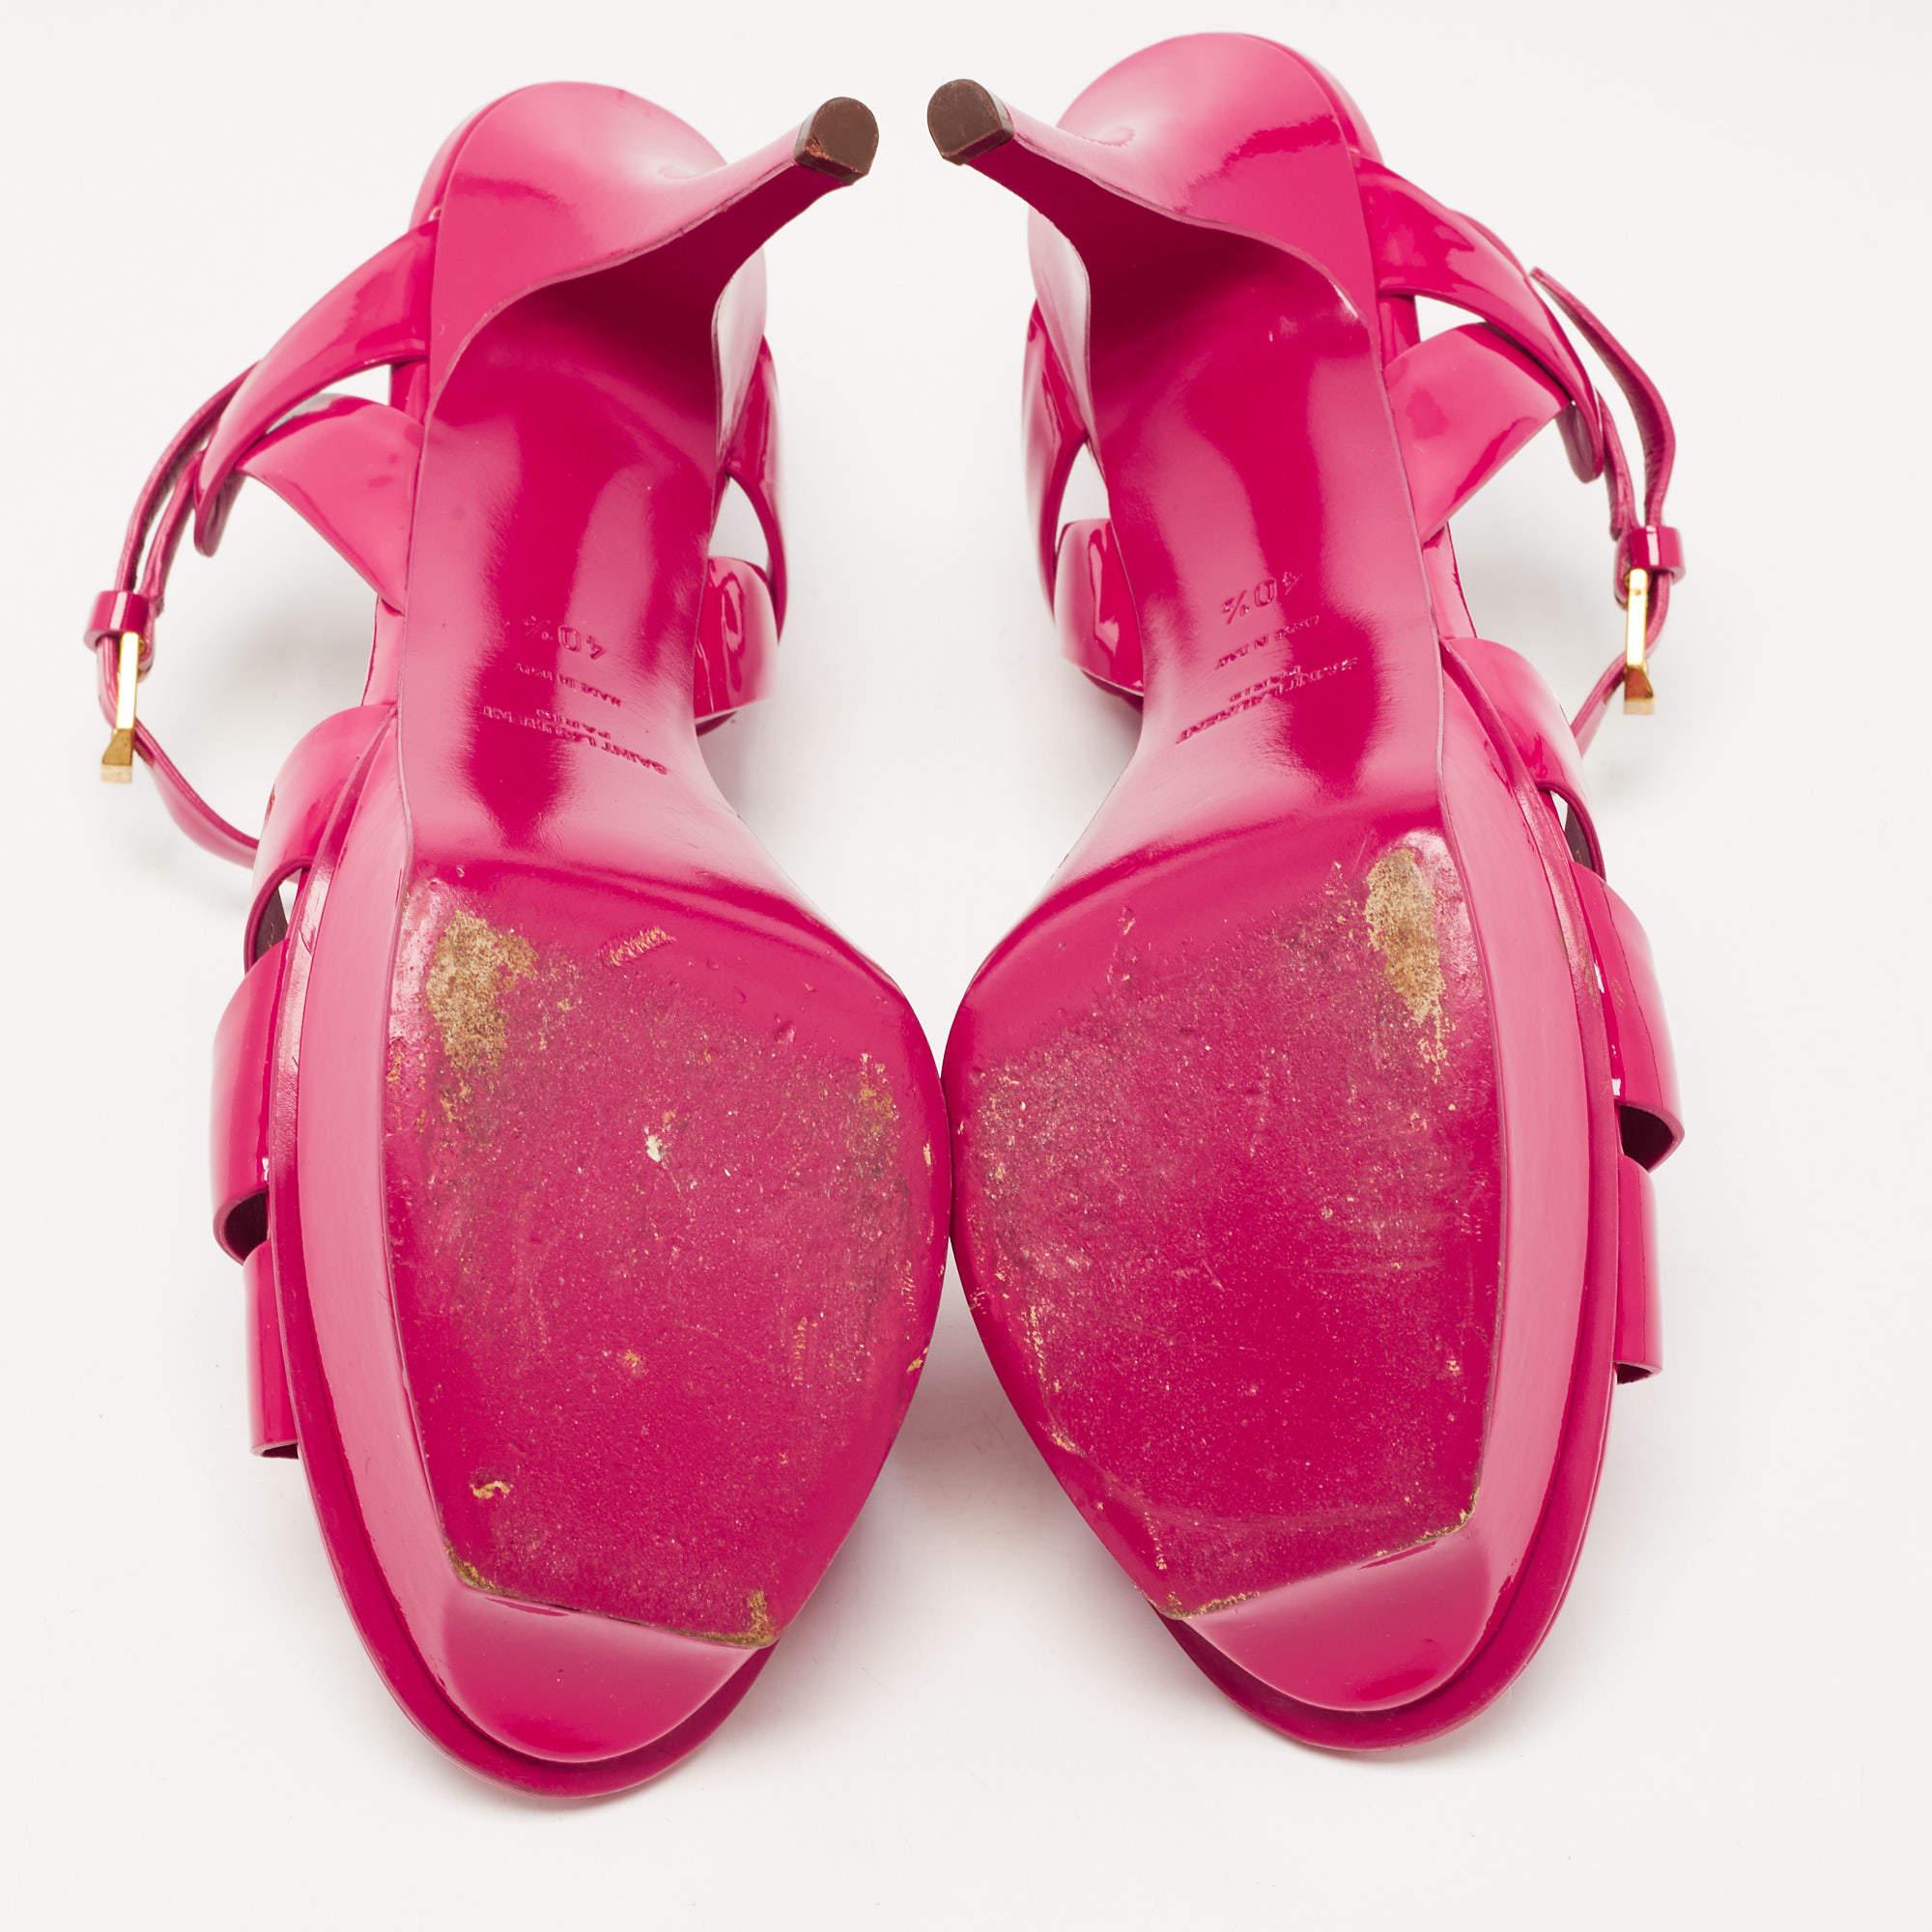 Saint Laurent Pink Patent Leather Tribute Sandals Size 40.5 4